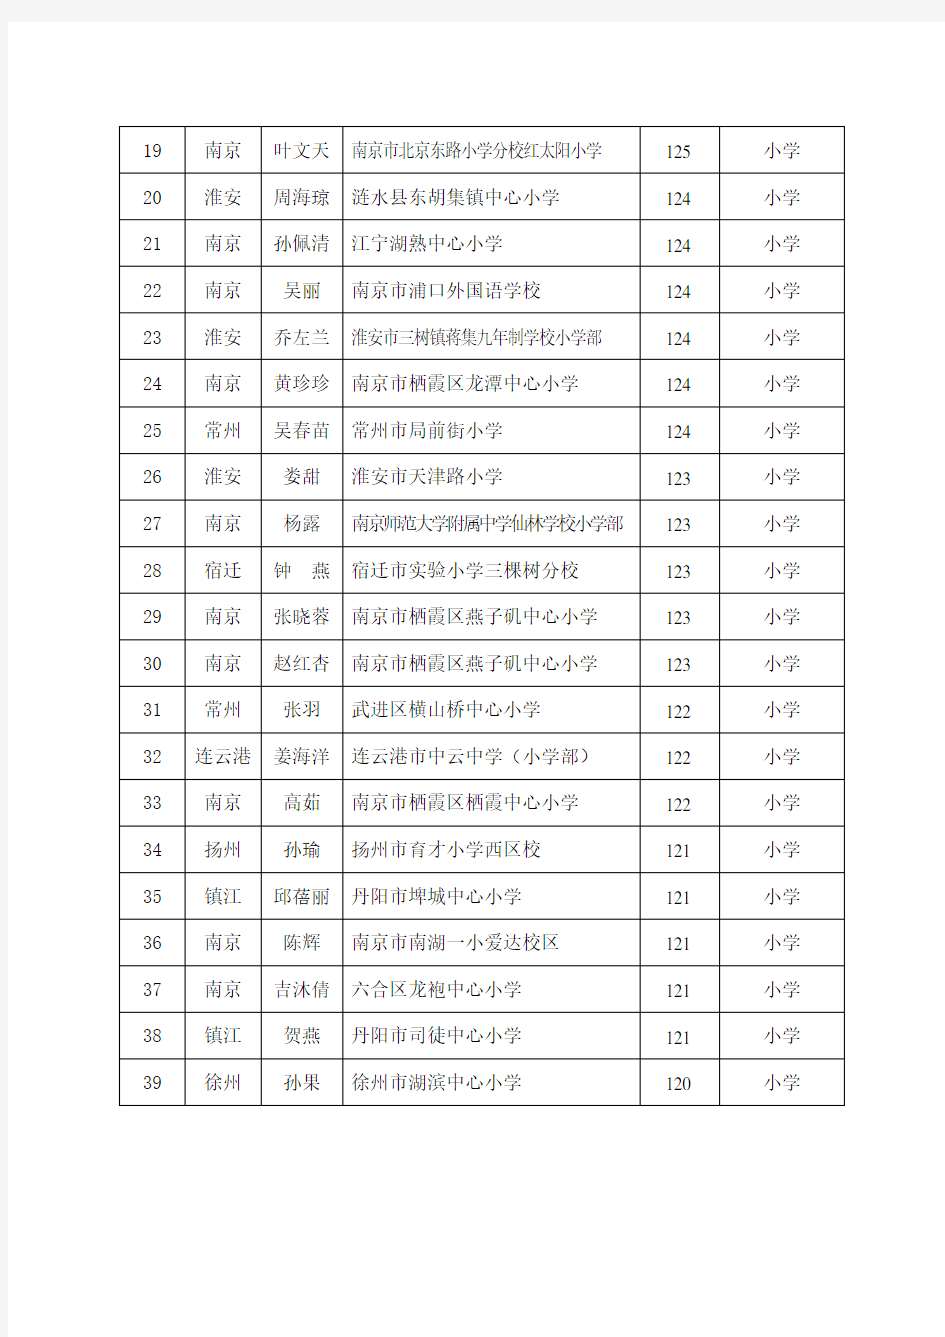 2015年雏雁培育项目选拔结果名录(306人)